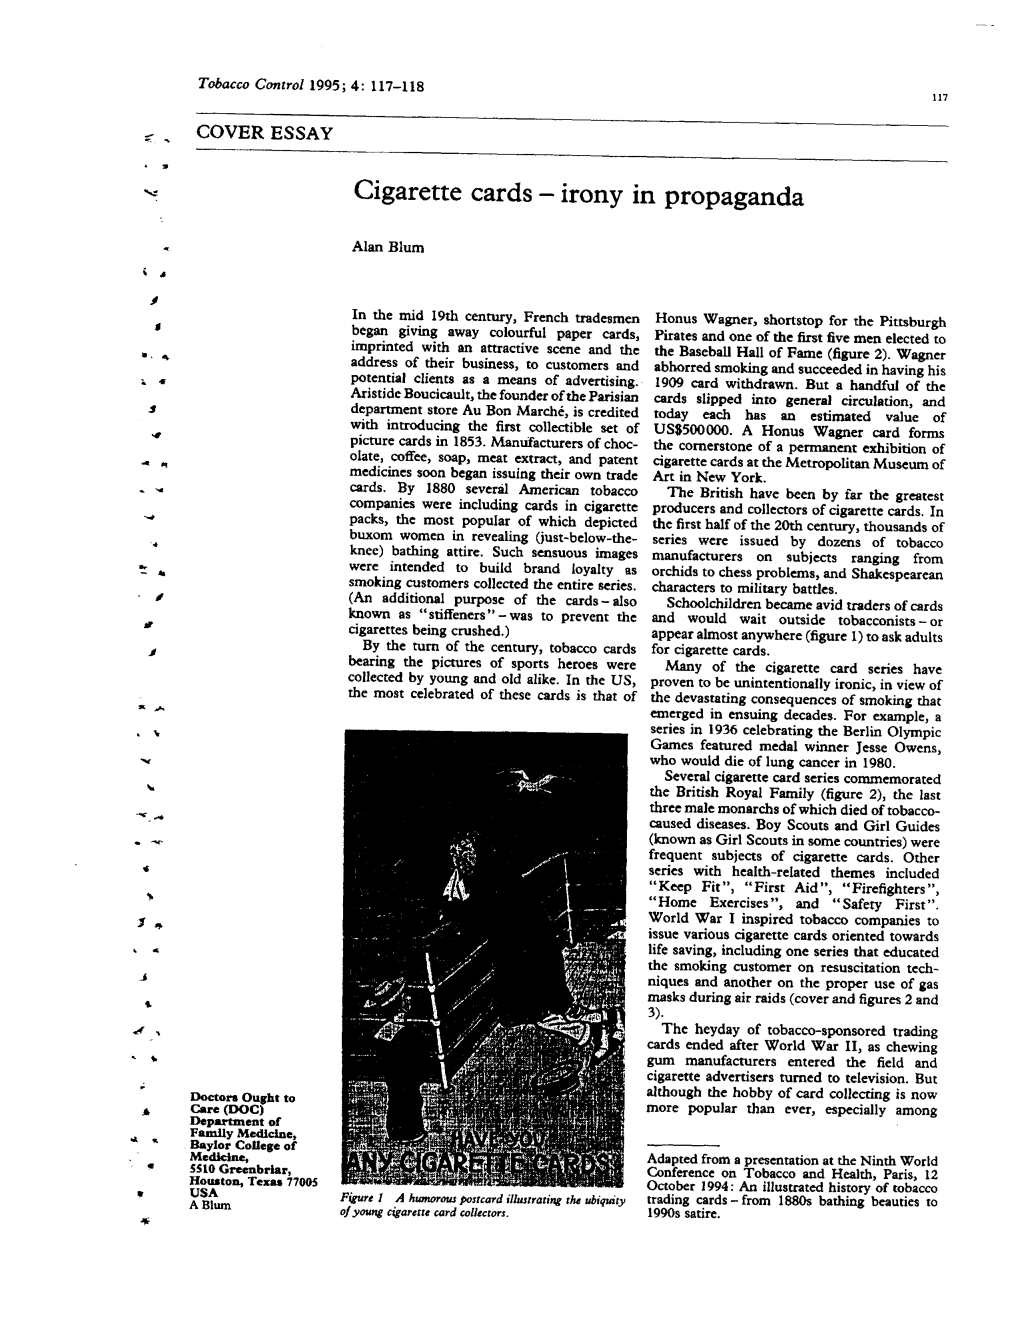 Cigarette Cards – Irony in Propaganda. Tobacco Control. 1995